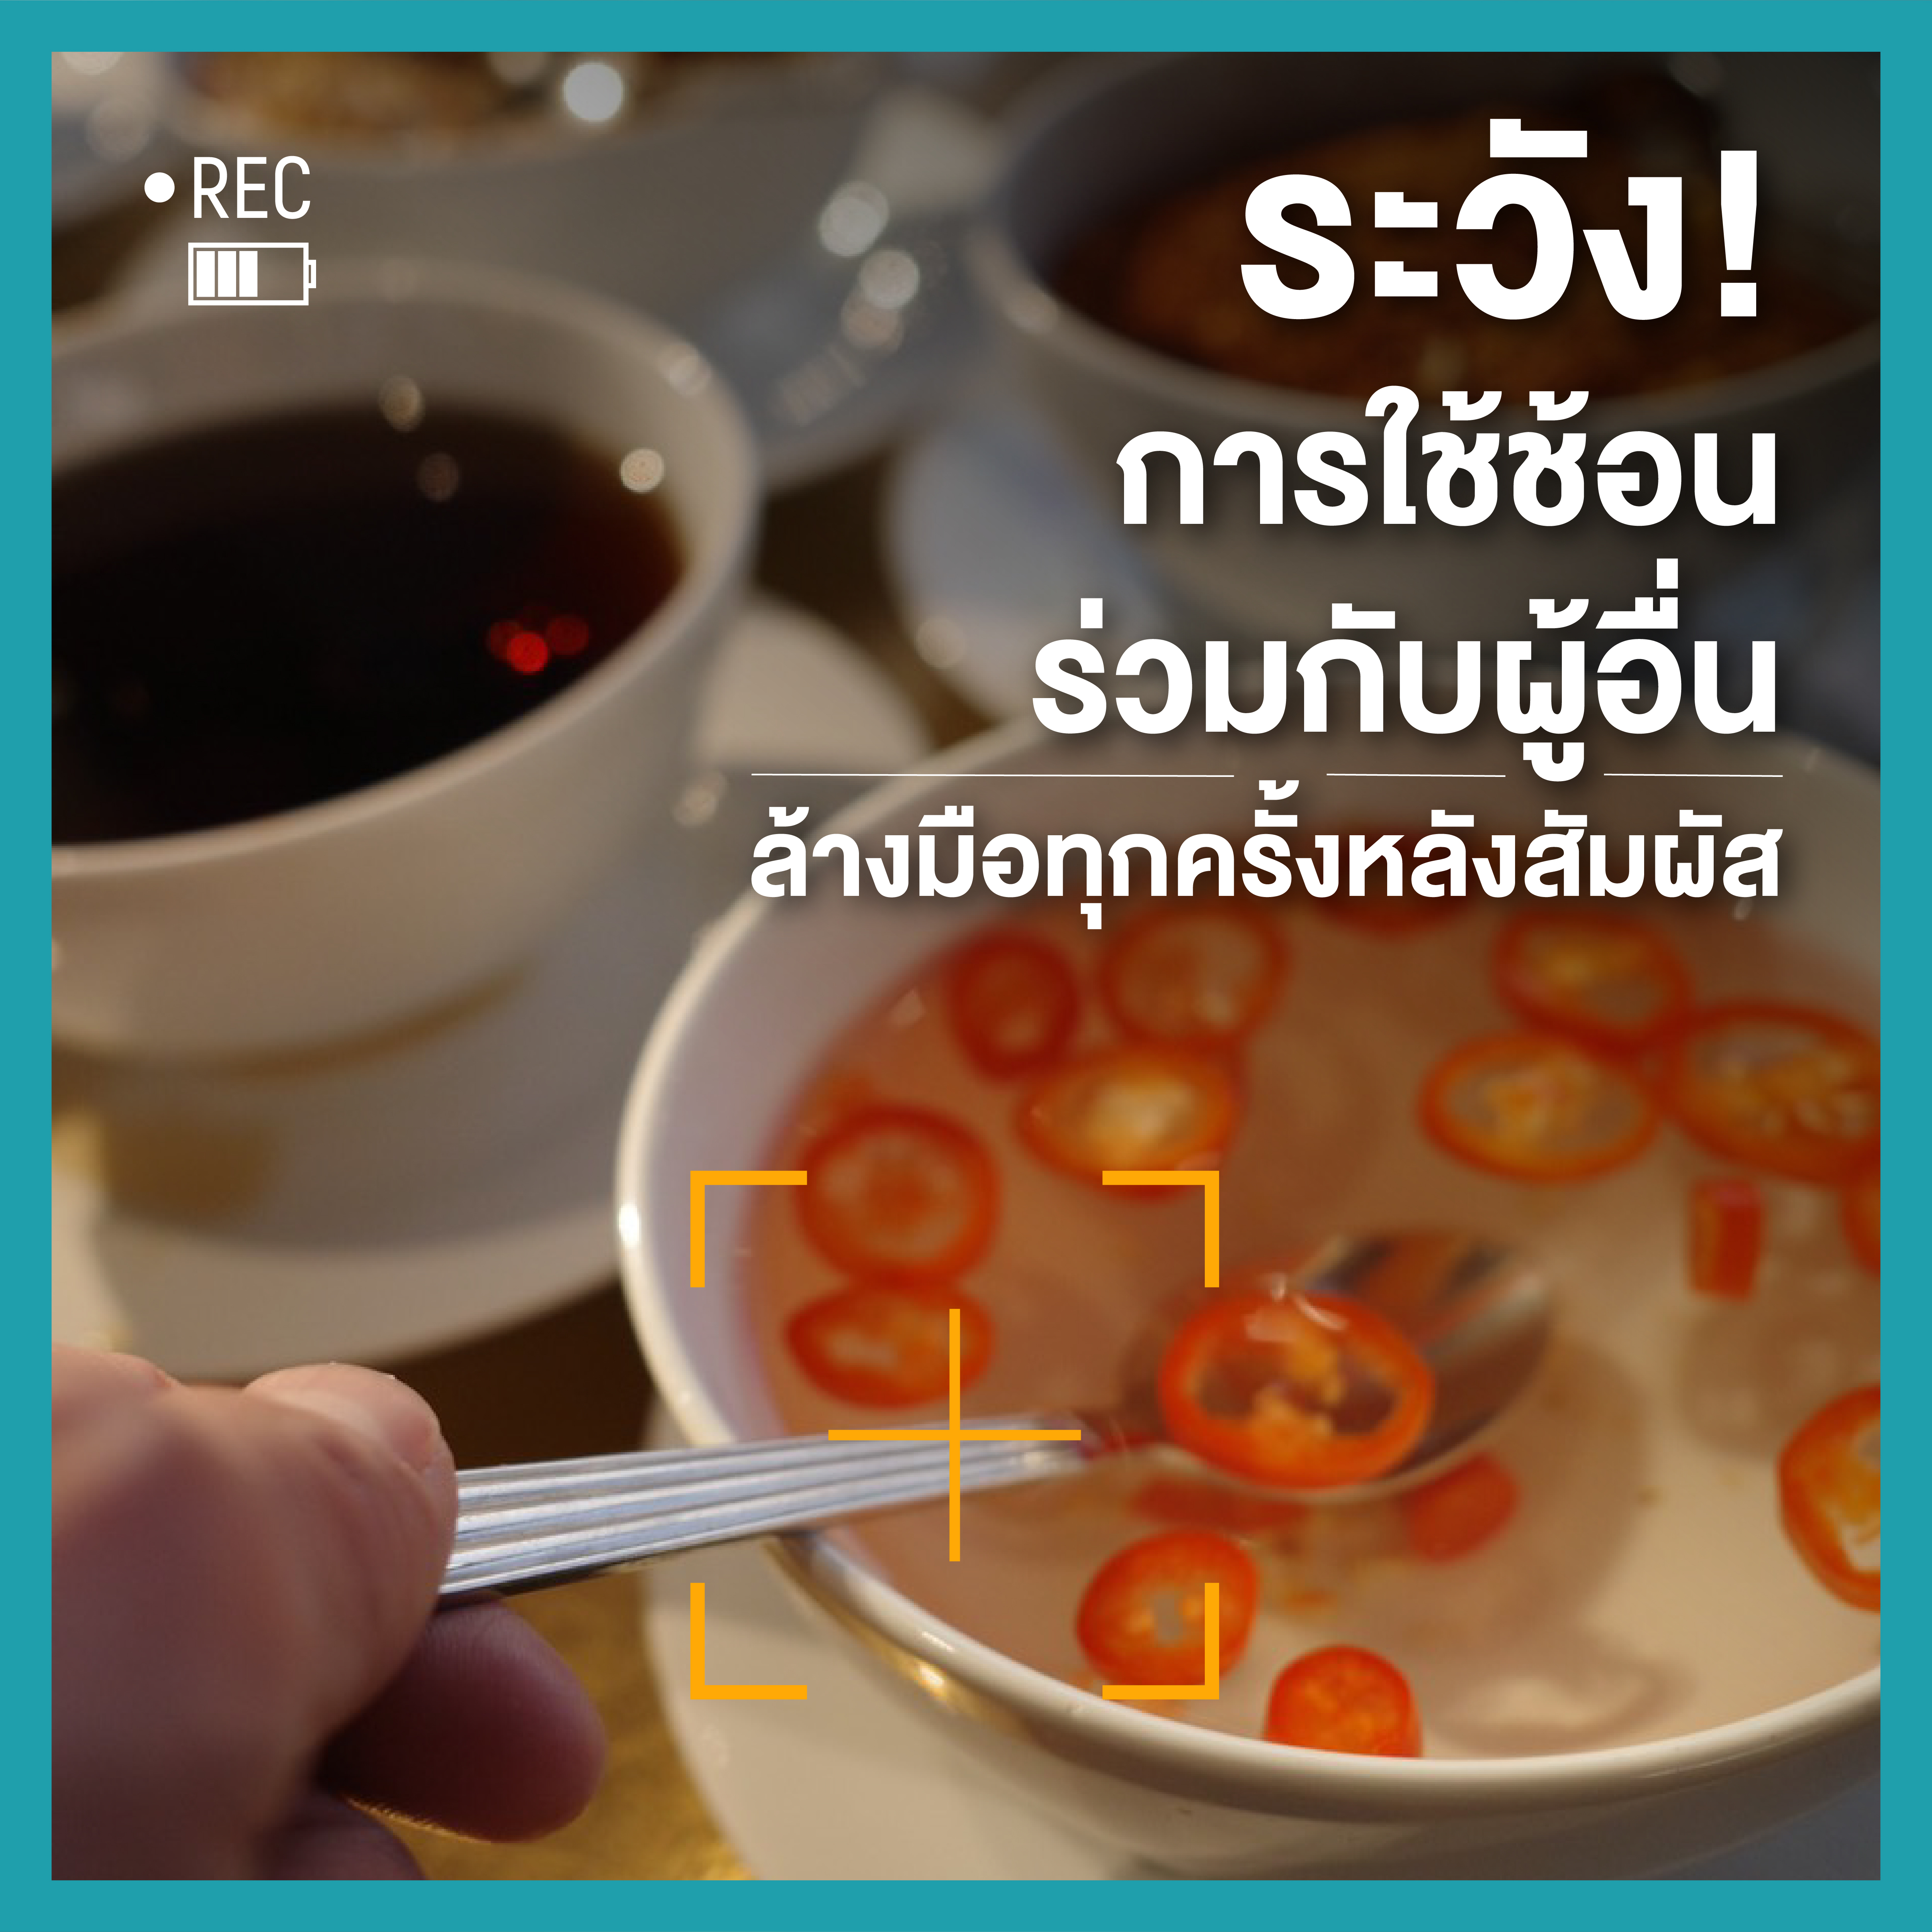 กินข้าวร่วมกับผู้อื่นคุณเสี่ยงรับเชื้อ (โควิด) จากอะไรบ้าง thaihealth